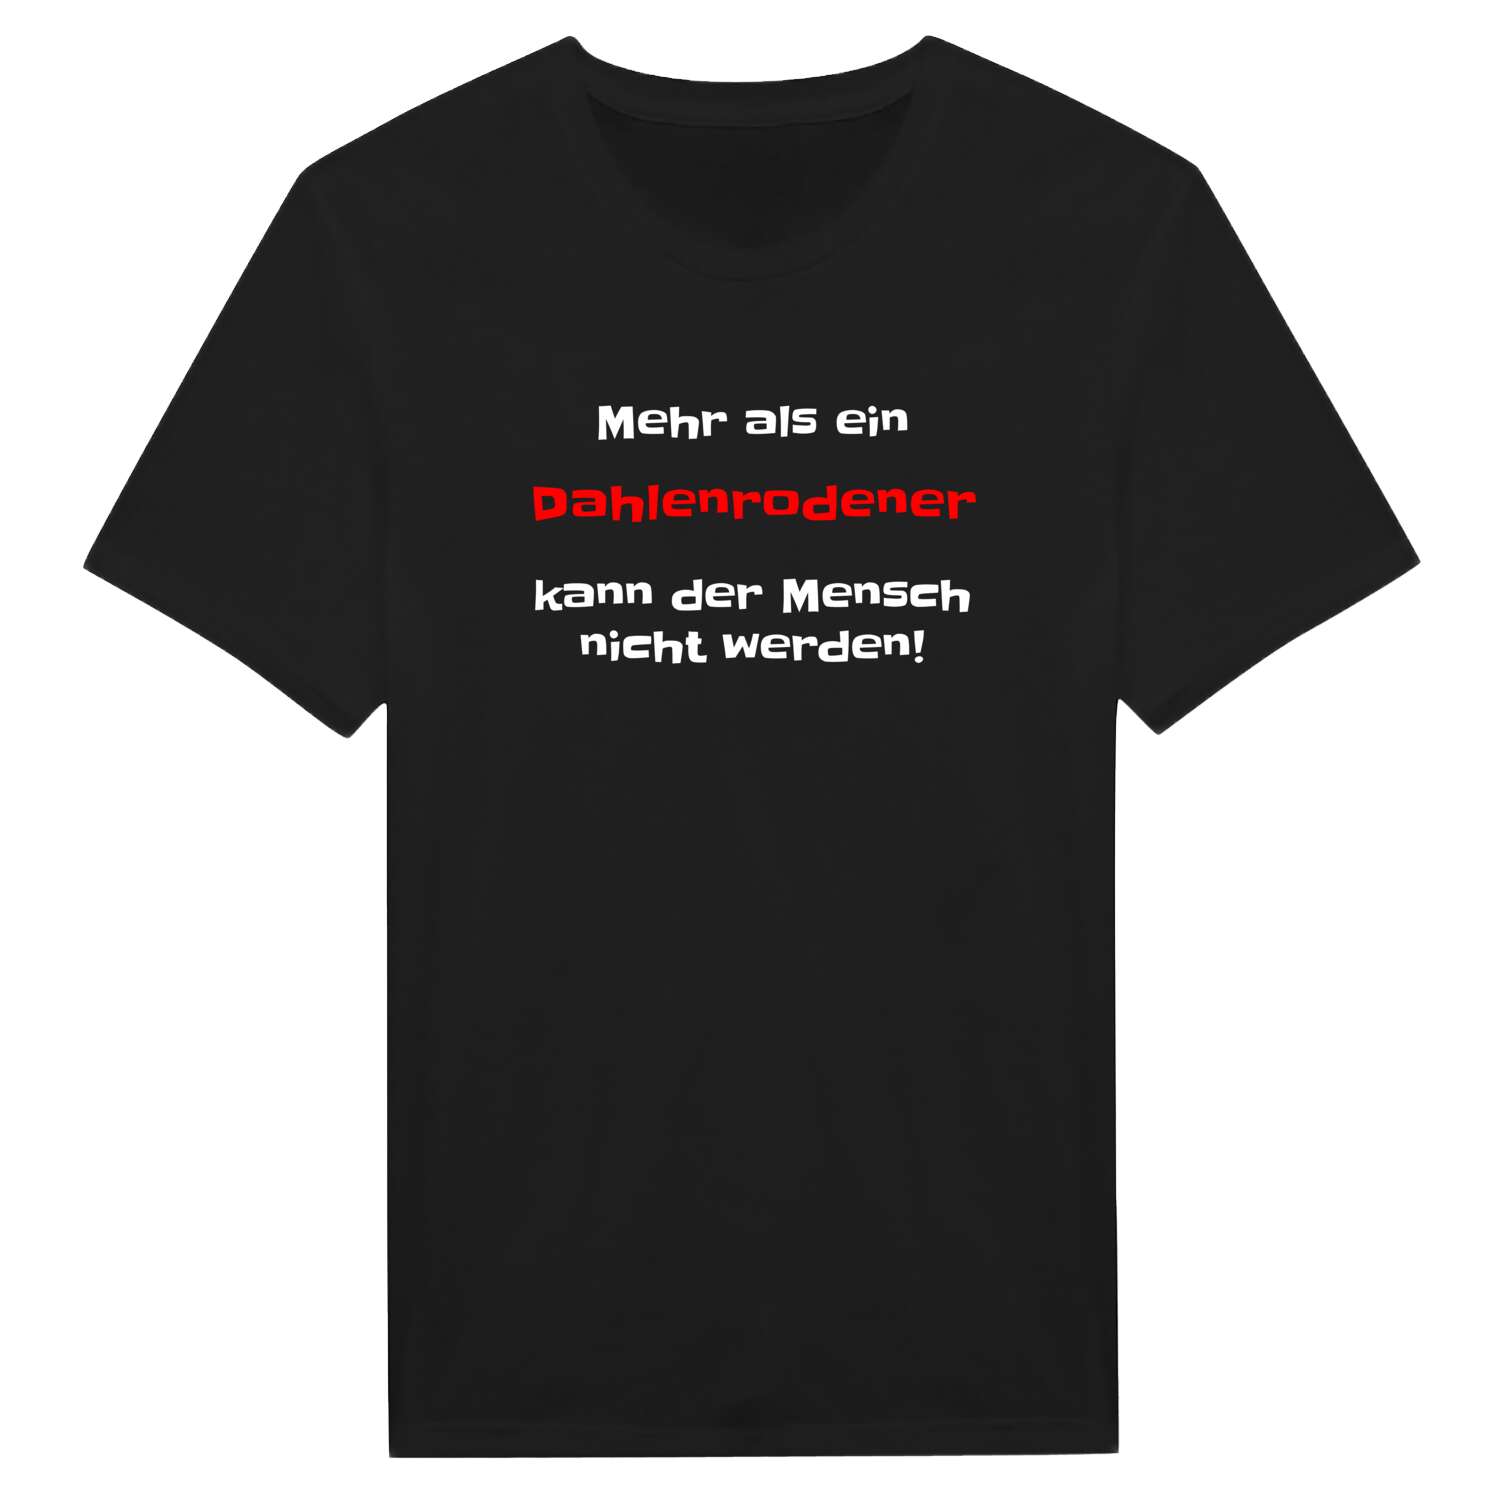 Dahlenrode T-Shirt »Mehr als ein«